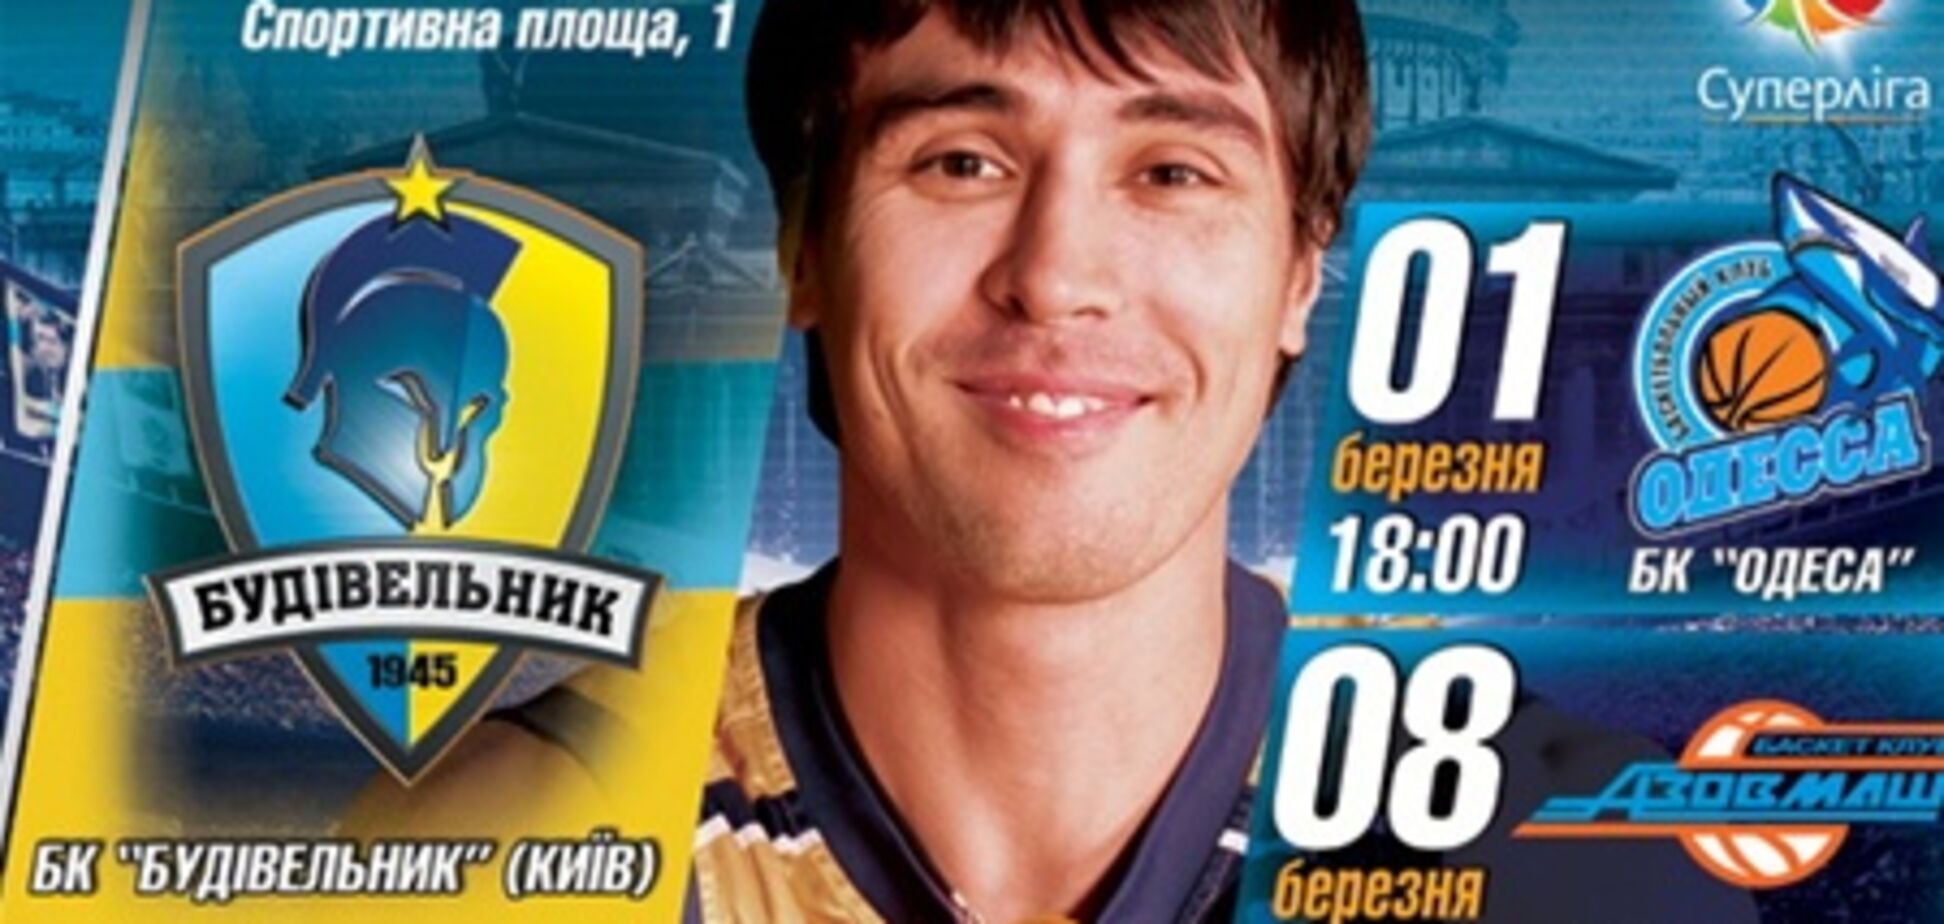 Суперлига 2012/13. Киевляне против Одессы и Мариуполя 